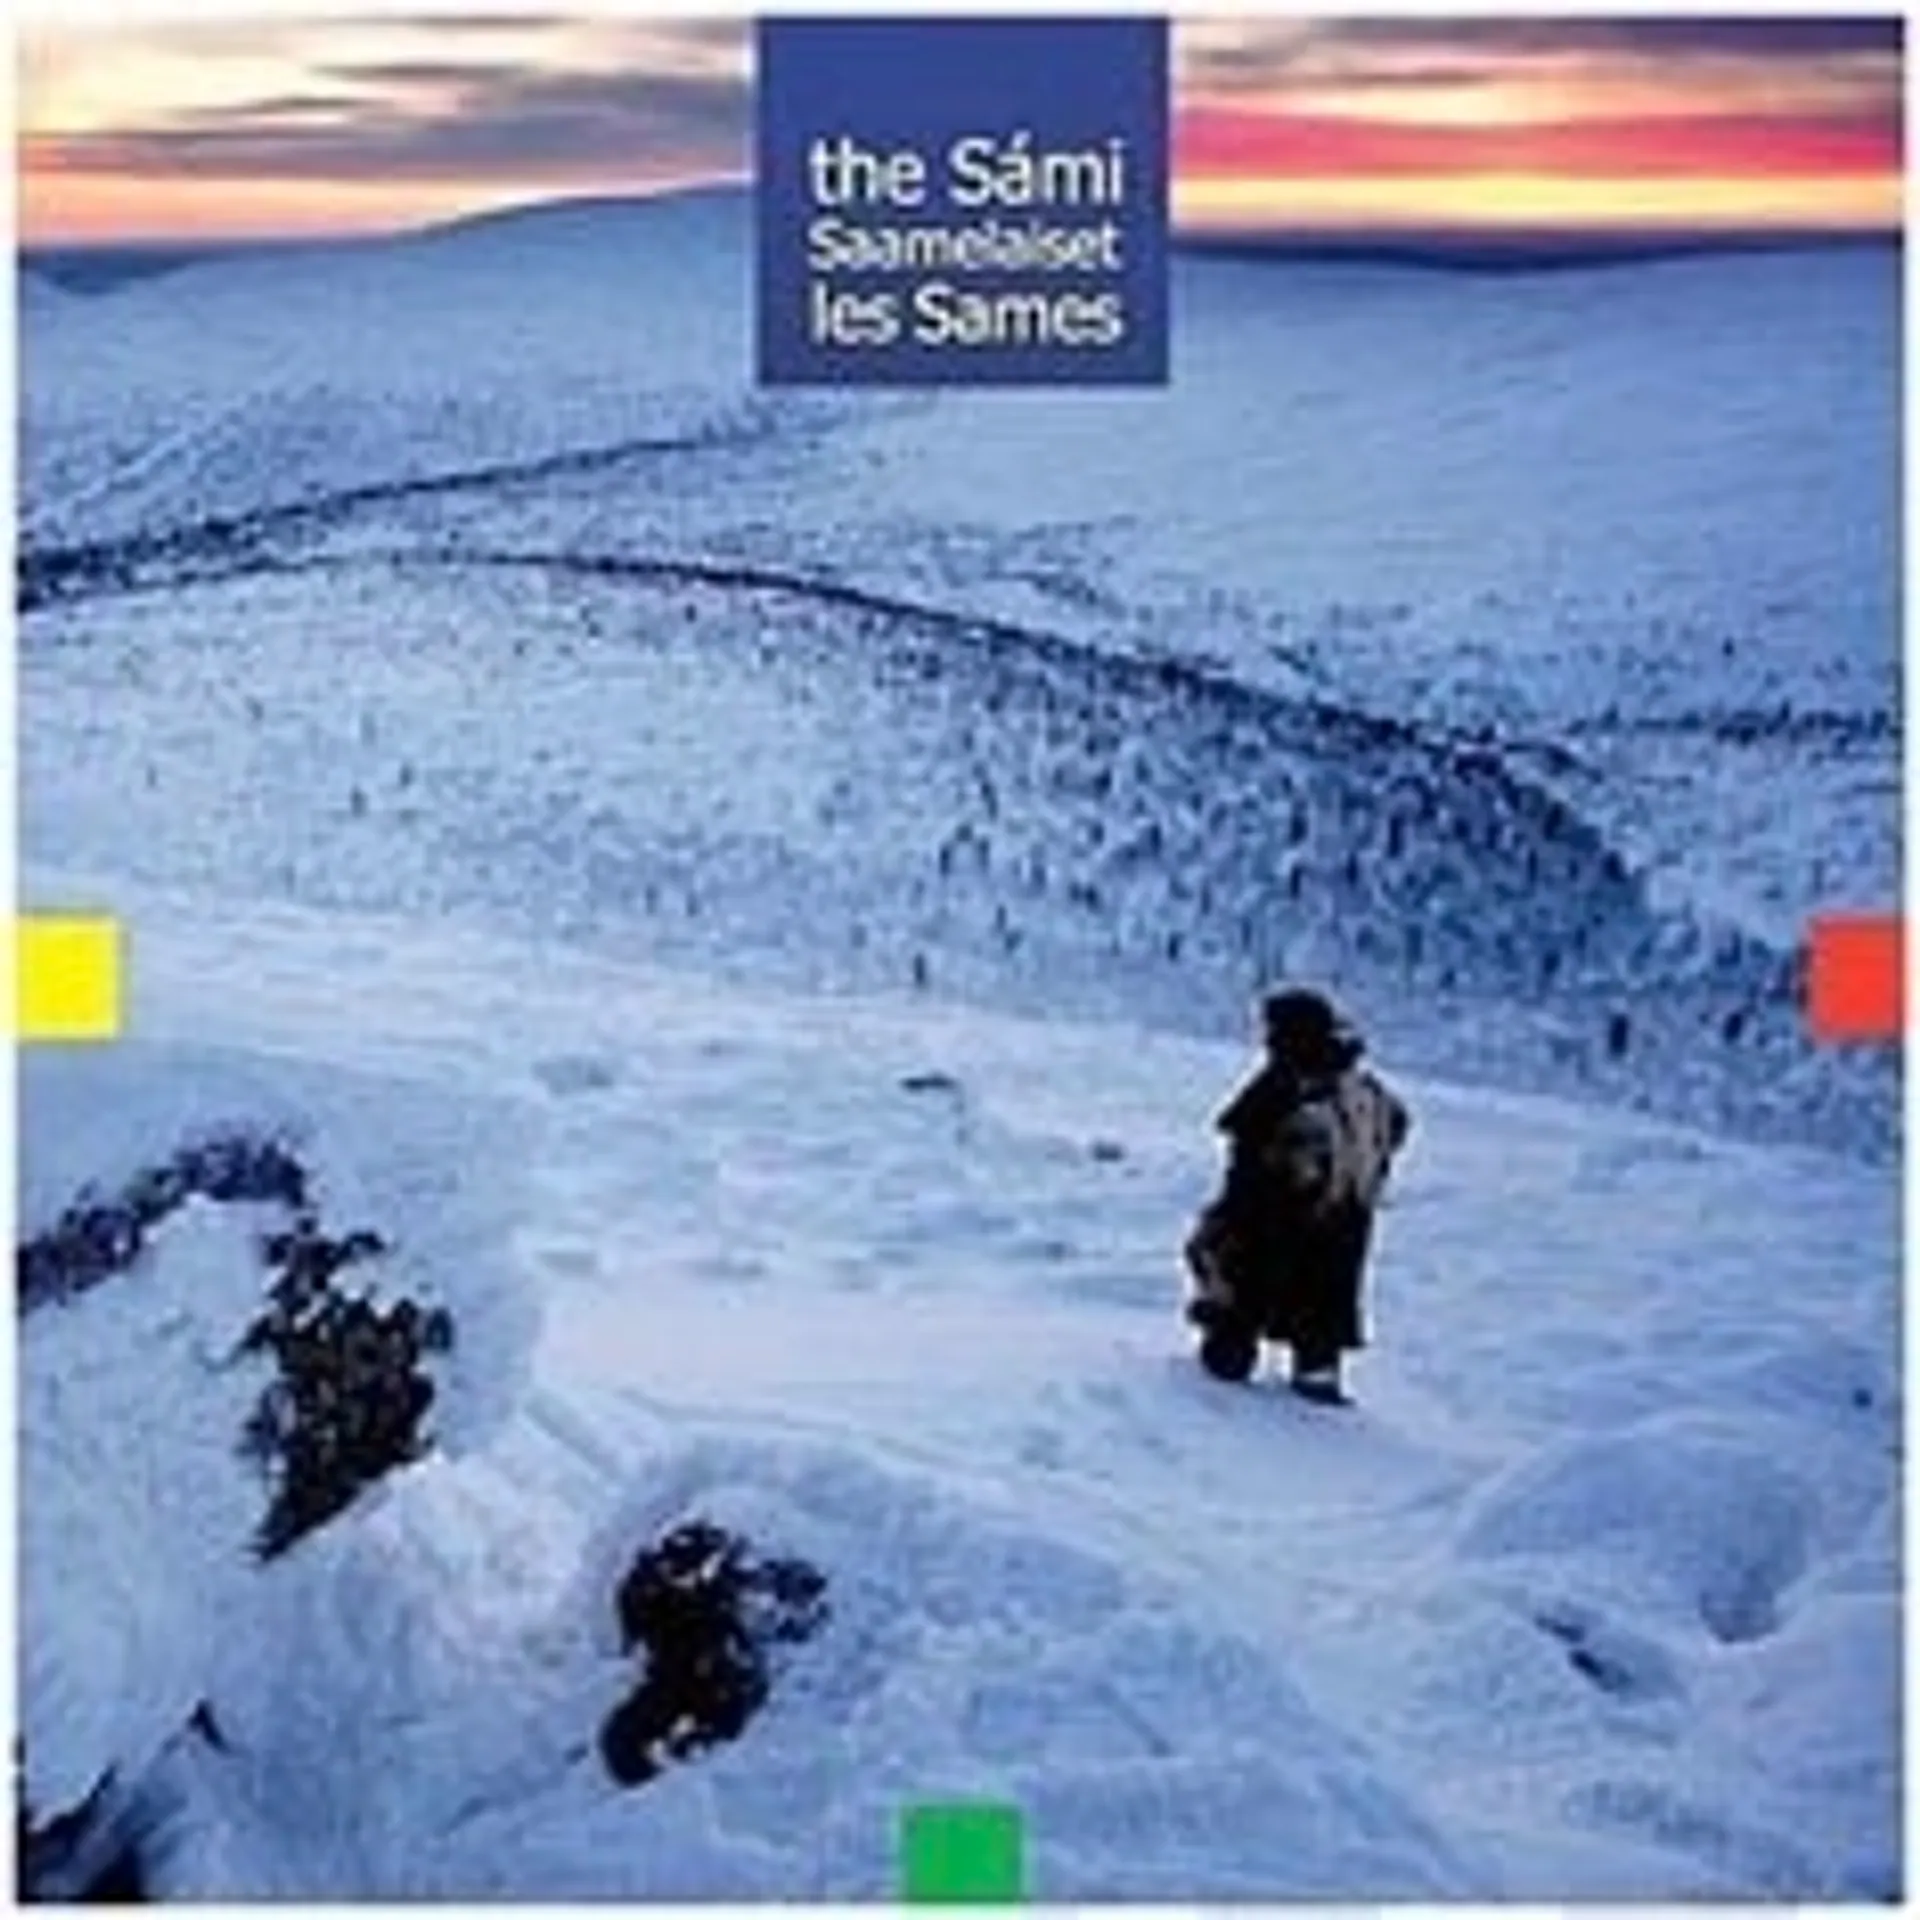 The Sami